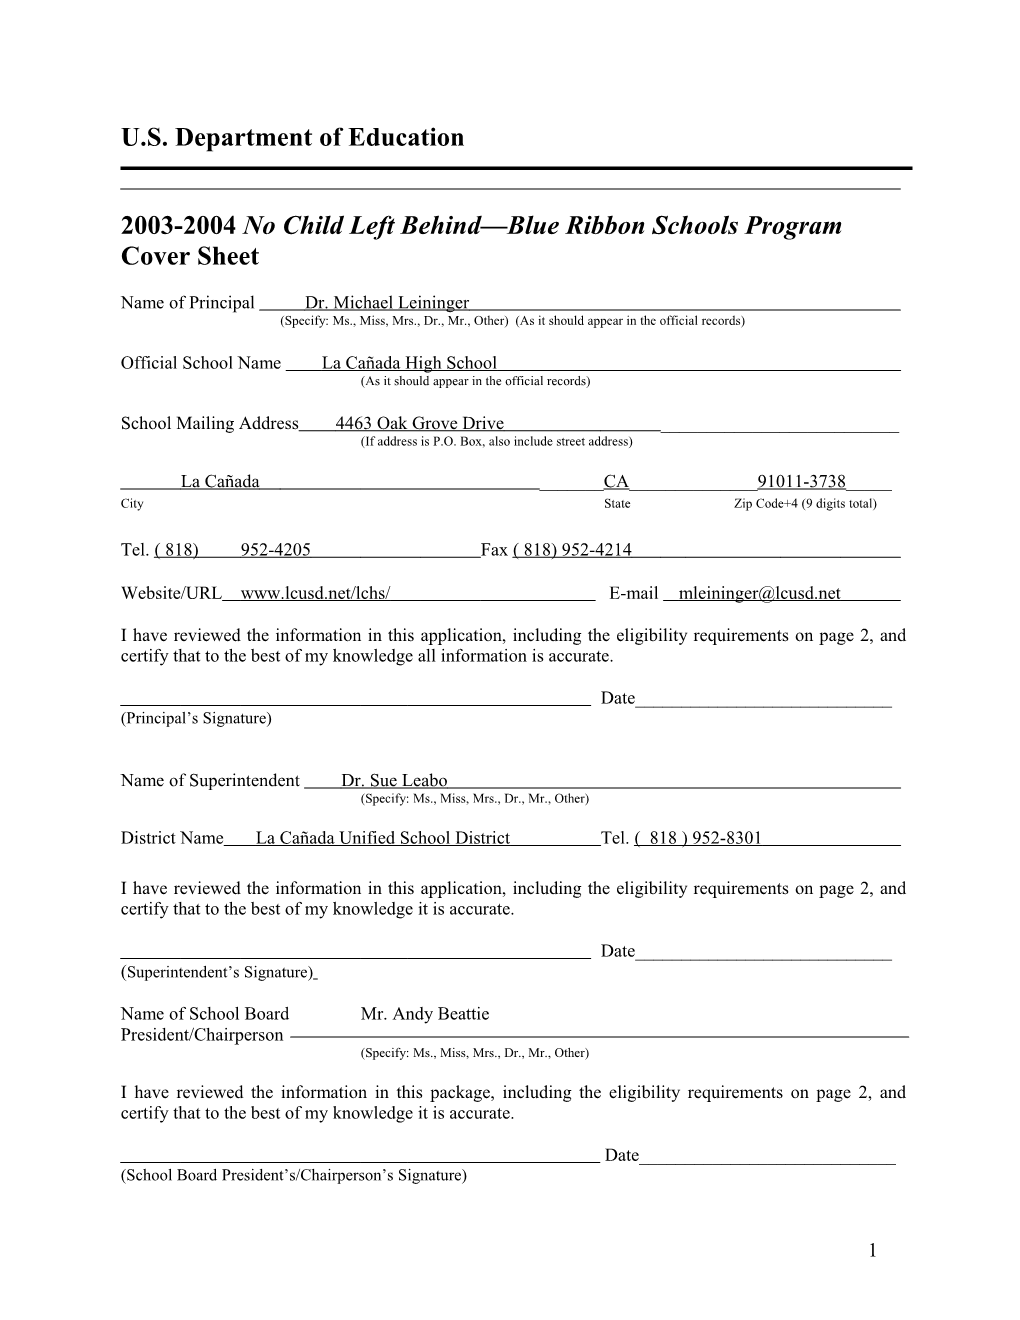 La Canada High School 2004 No Child Left Behind-Blue Ribbon School Application (Msword)